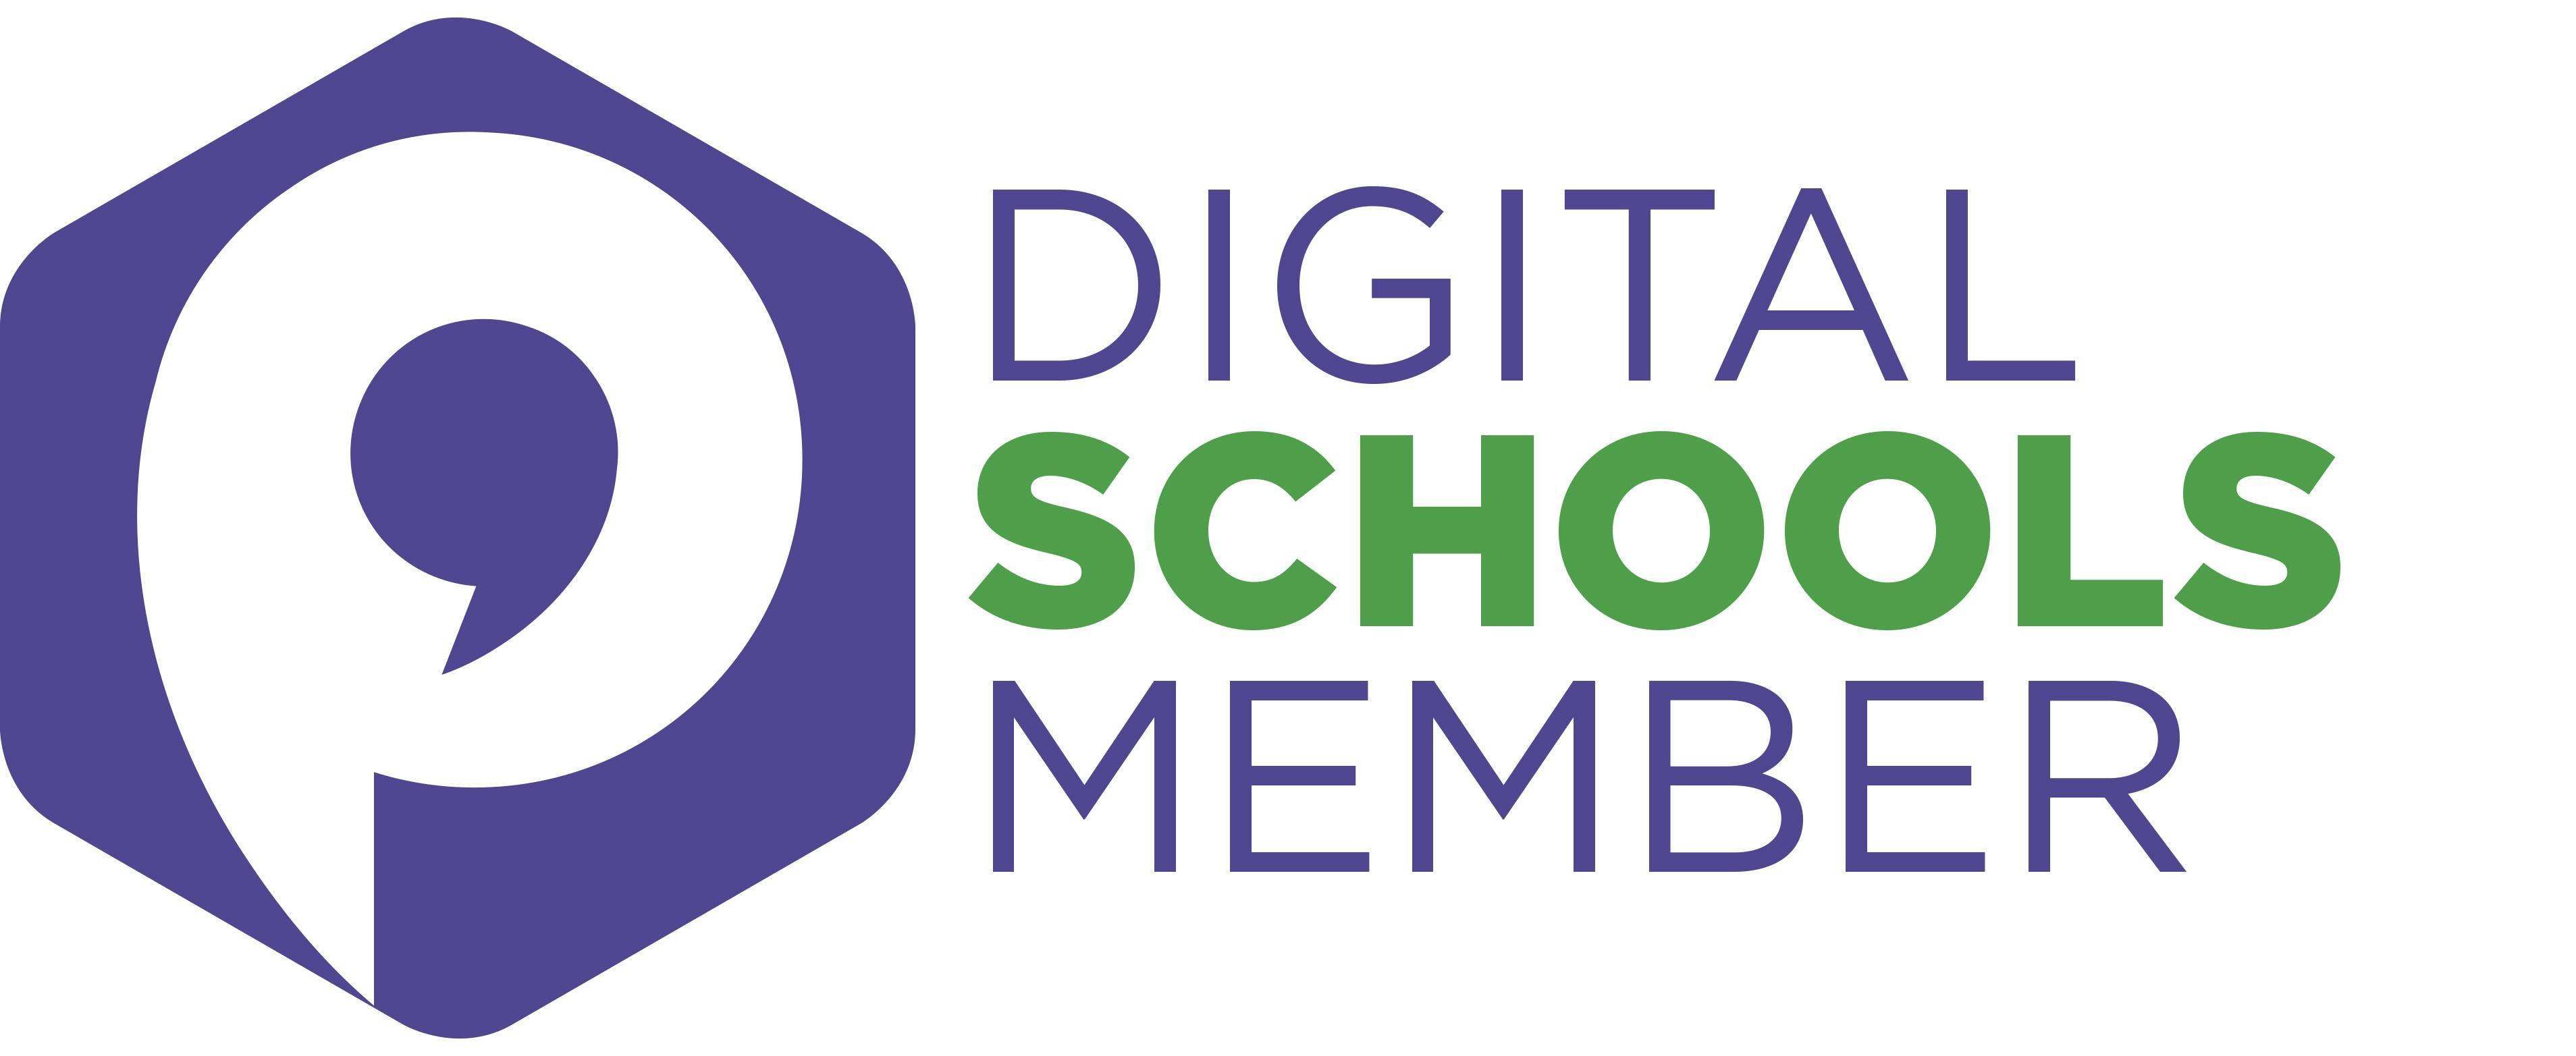 Web Digital Logo - DIGITAL SCHOOL logo WEB (JPEG)